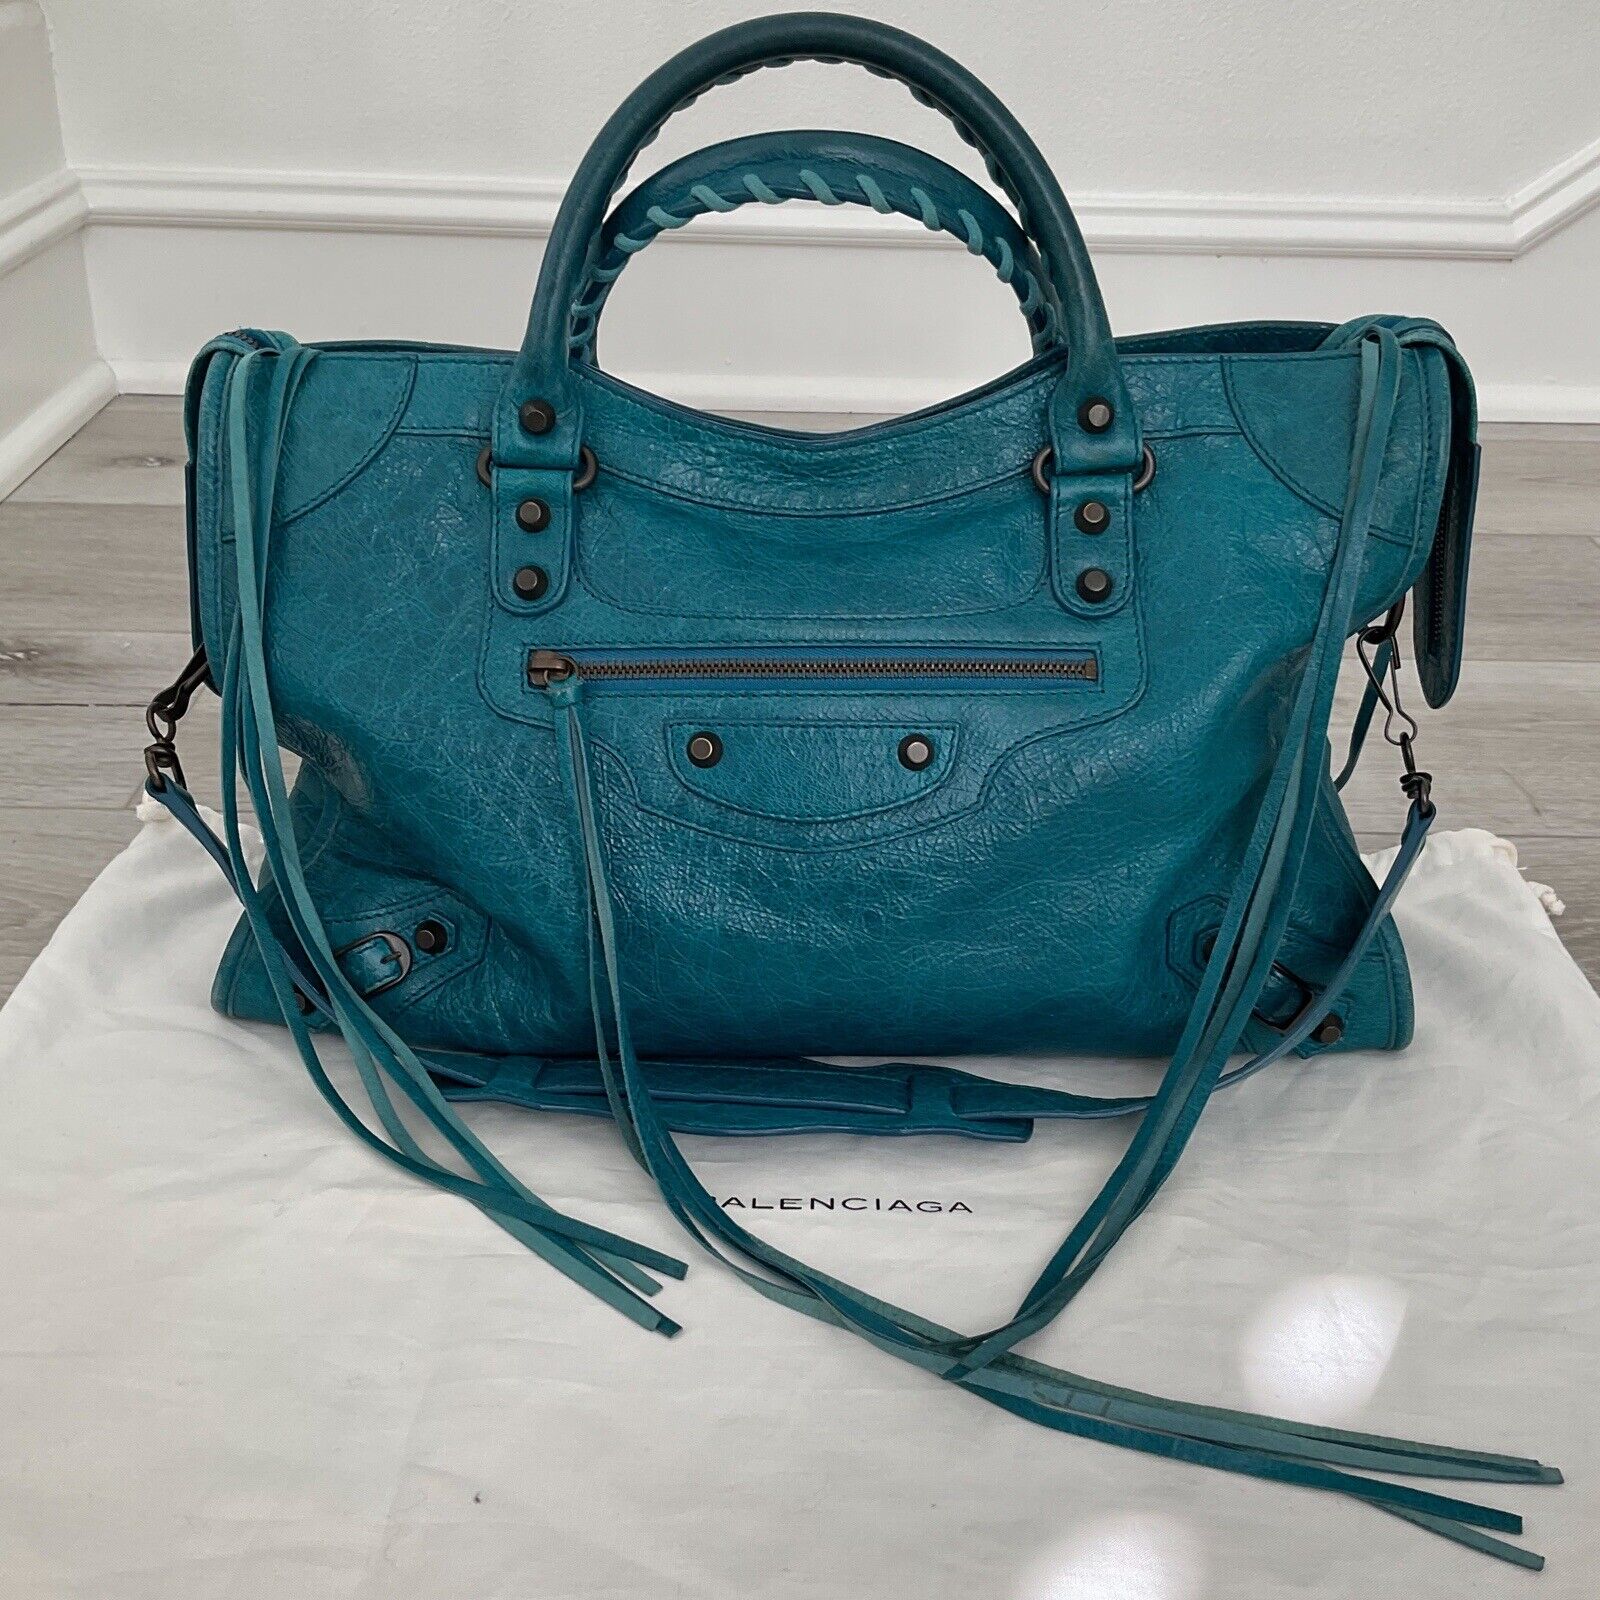 Balenciaga Handbag - Teal Blue/Green |